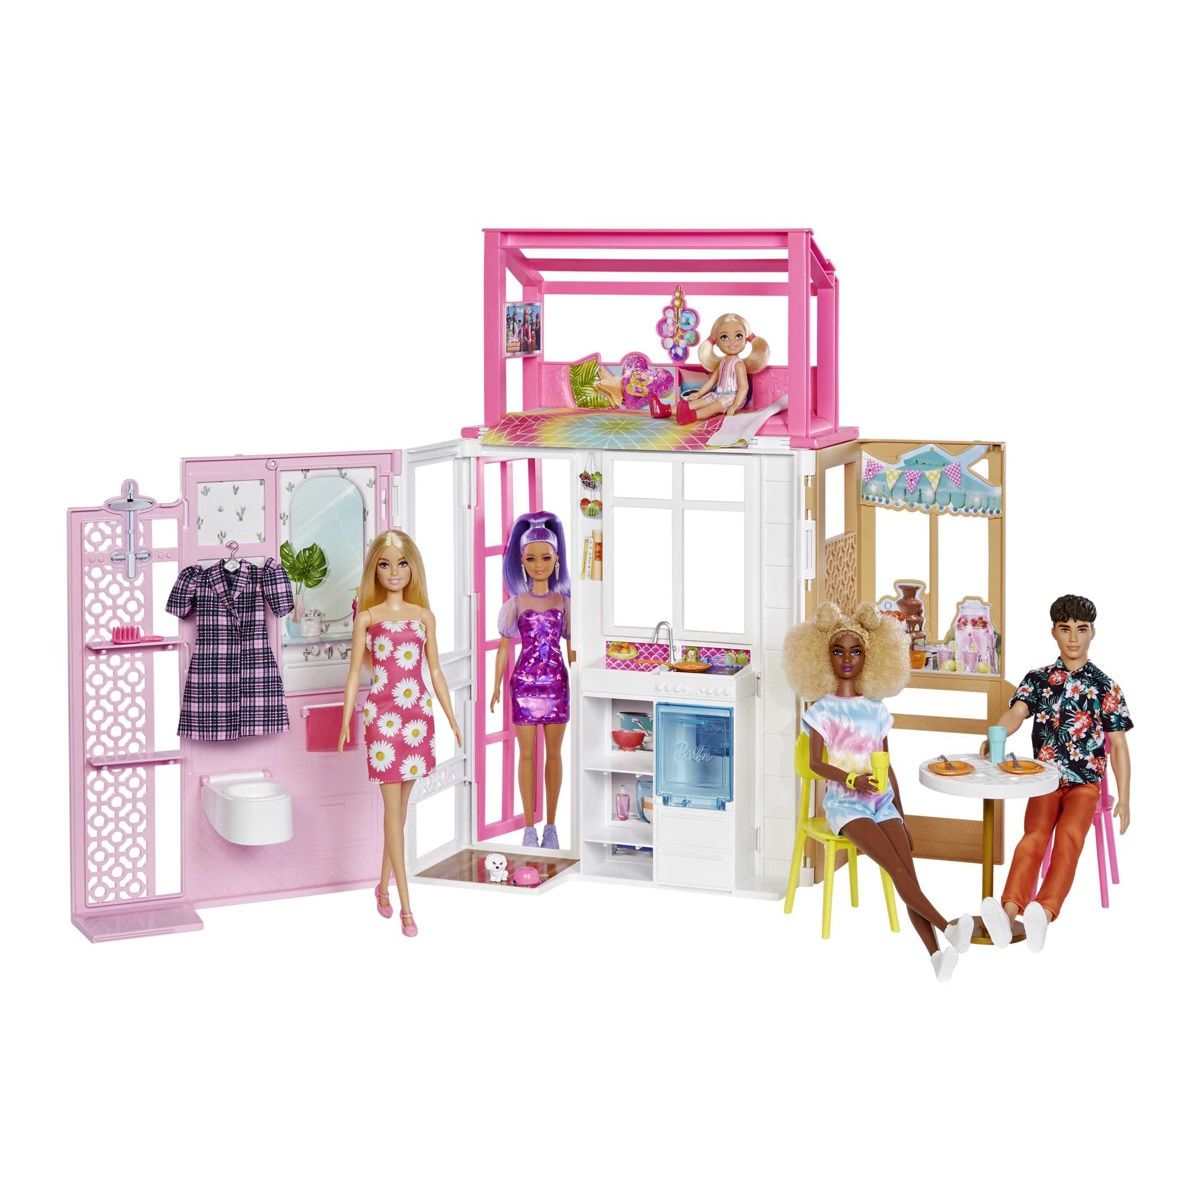 Barbie-La Chambre de Barbie-Coffret poupée, meubles et accessoires 